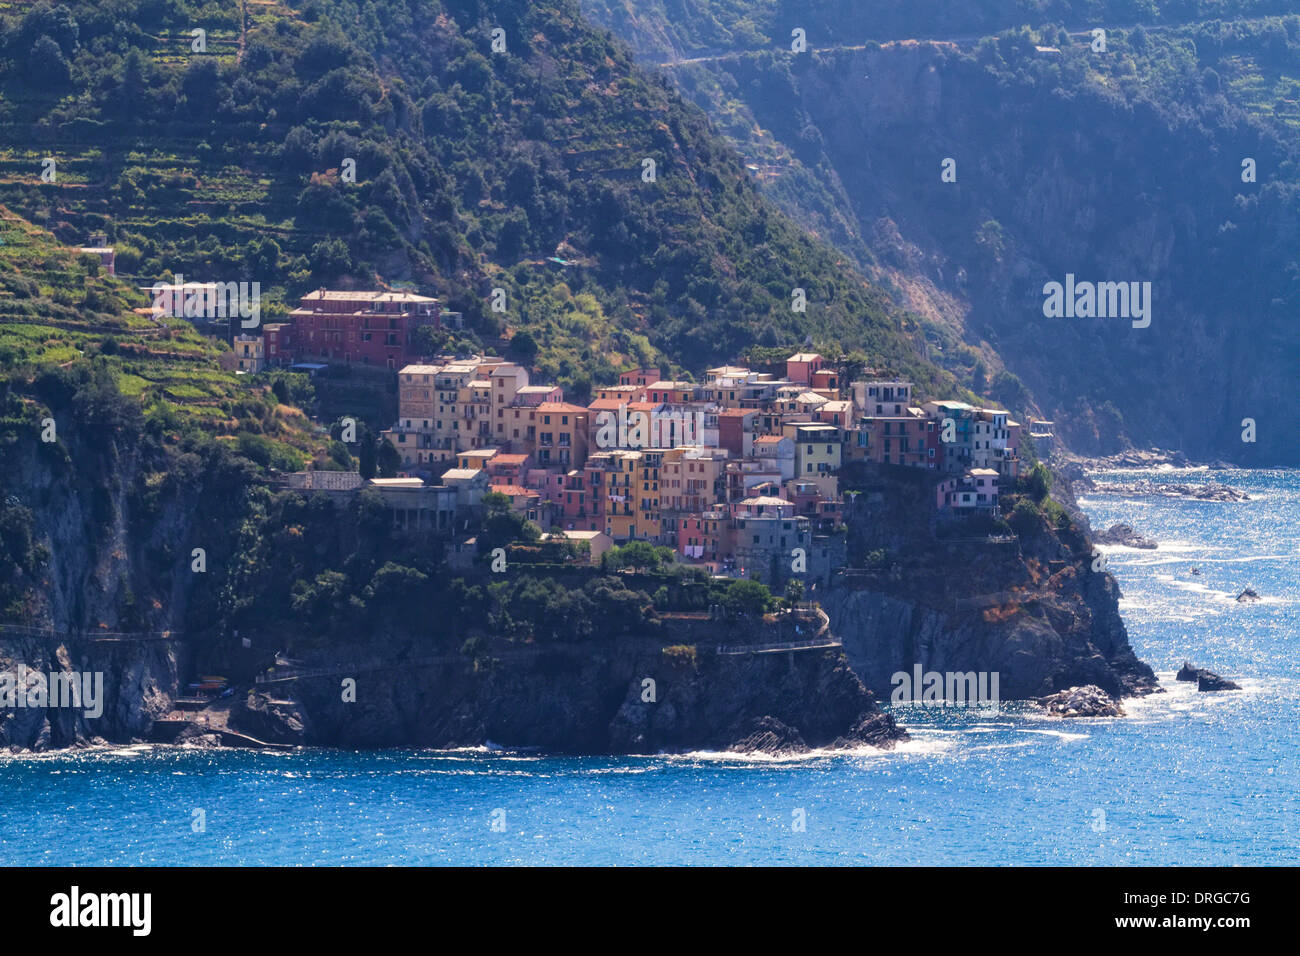 Petite ville sur une falaise au bord de mer, Corniglia, Cinque Terre, ligurie, italie Banque D'Images